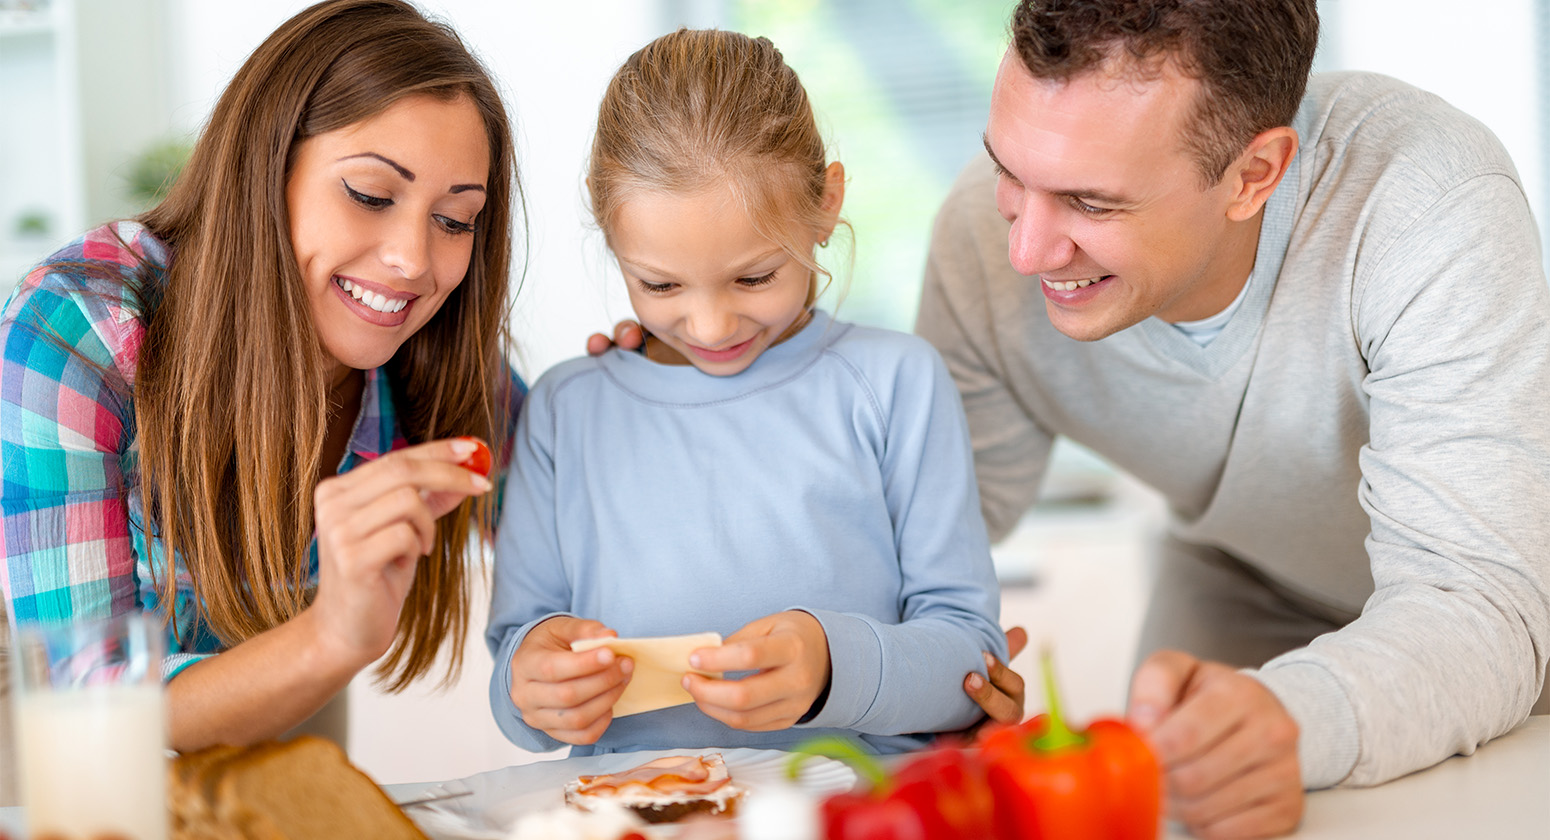 Its Cool - A importância do estímulo a educação alimentar na infância. Casal com sua filha, sorrindo enquanto estão mexendo com alimentos na mesa